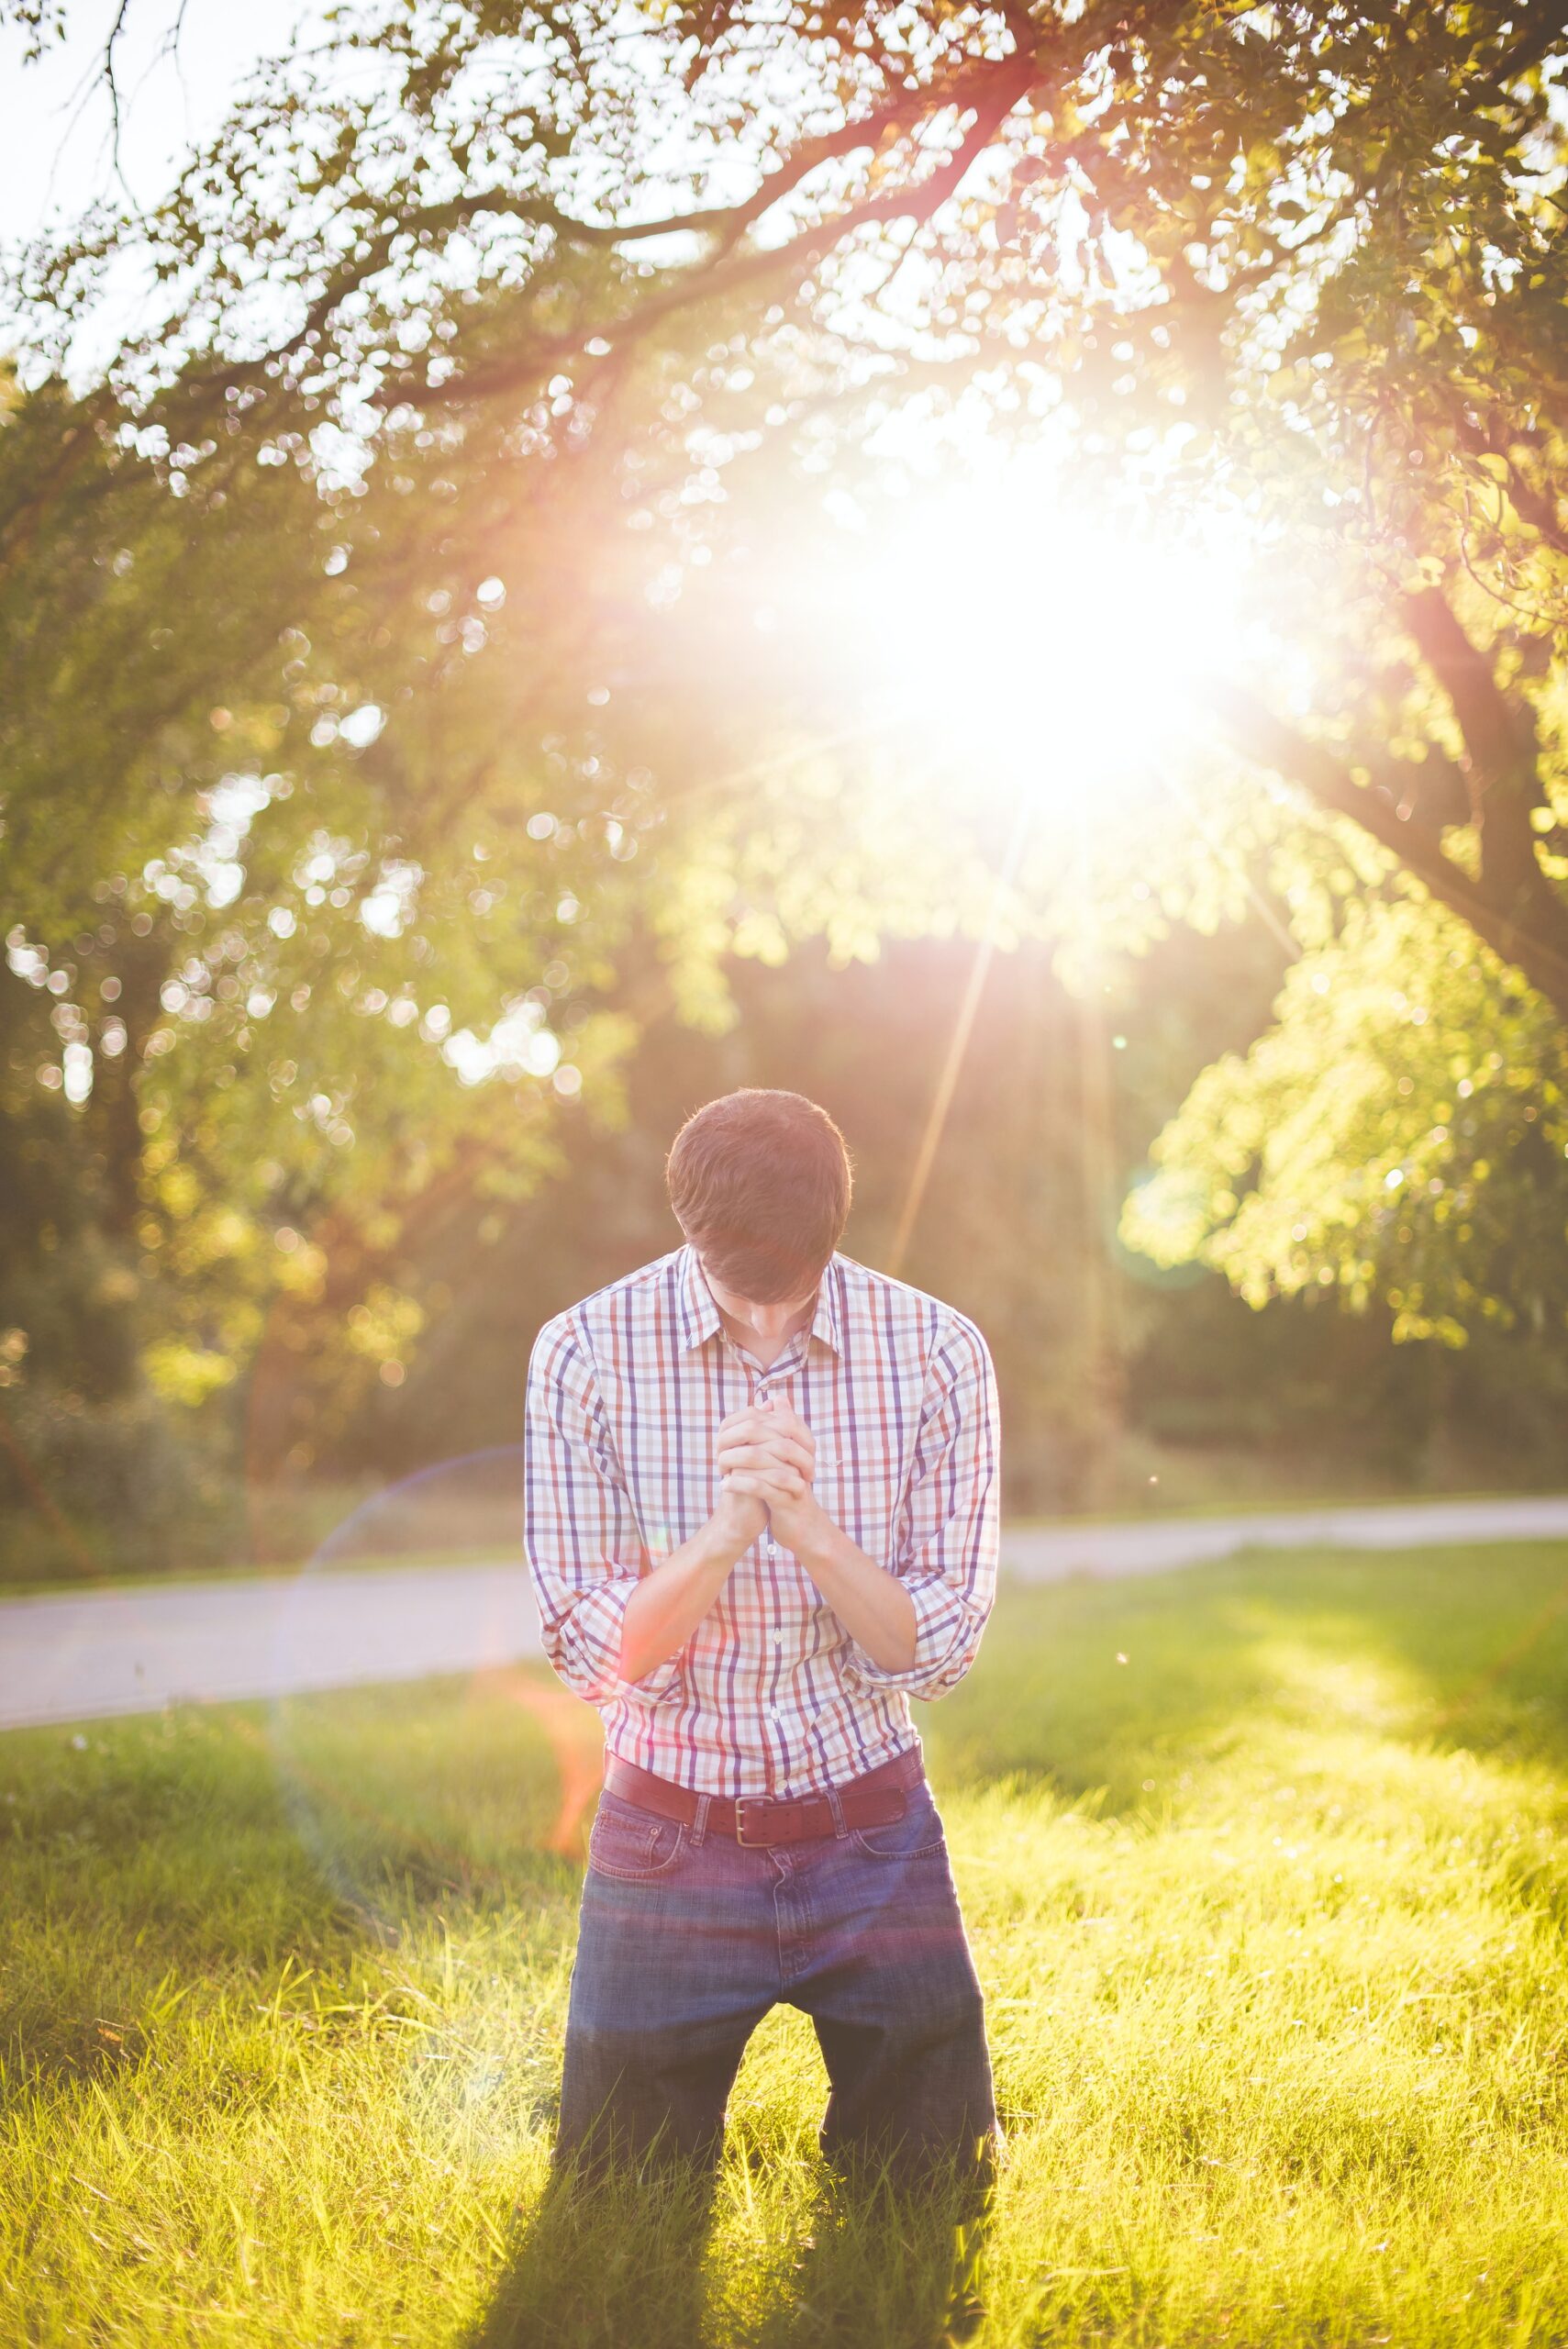 Trouver le tapis de prière idéal avec boussole intégrée : un guide pour faciliter vos moments de recueillement